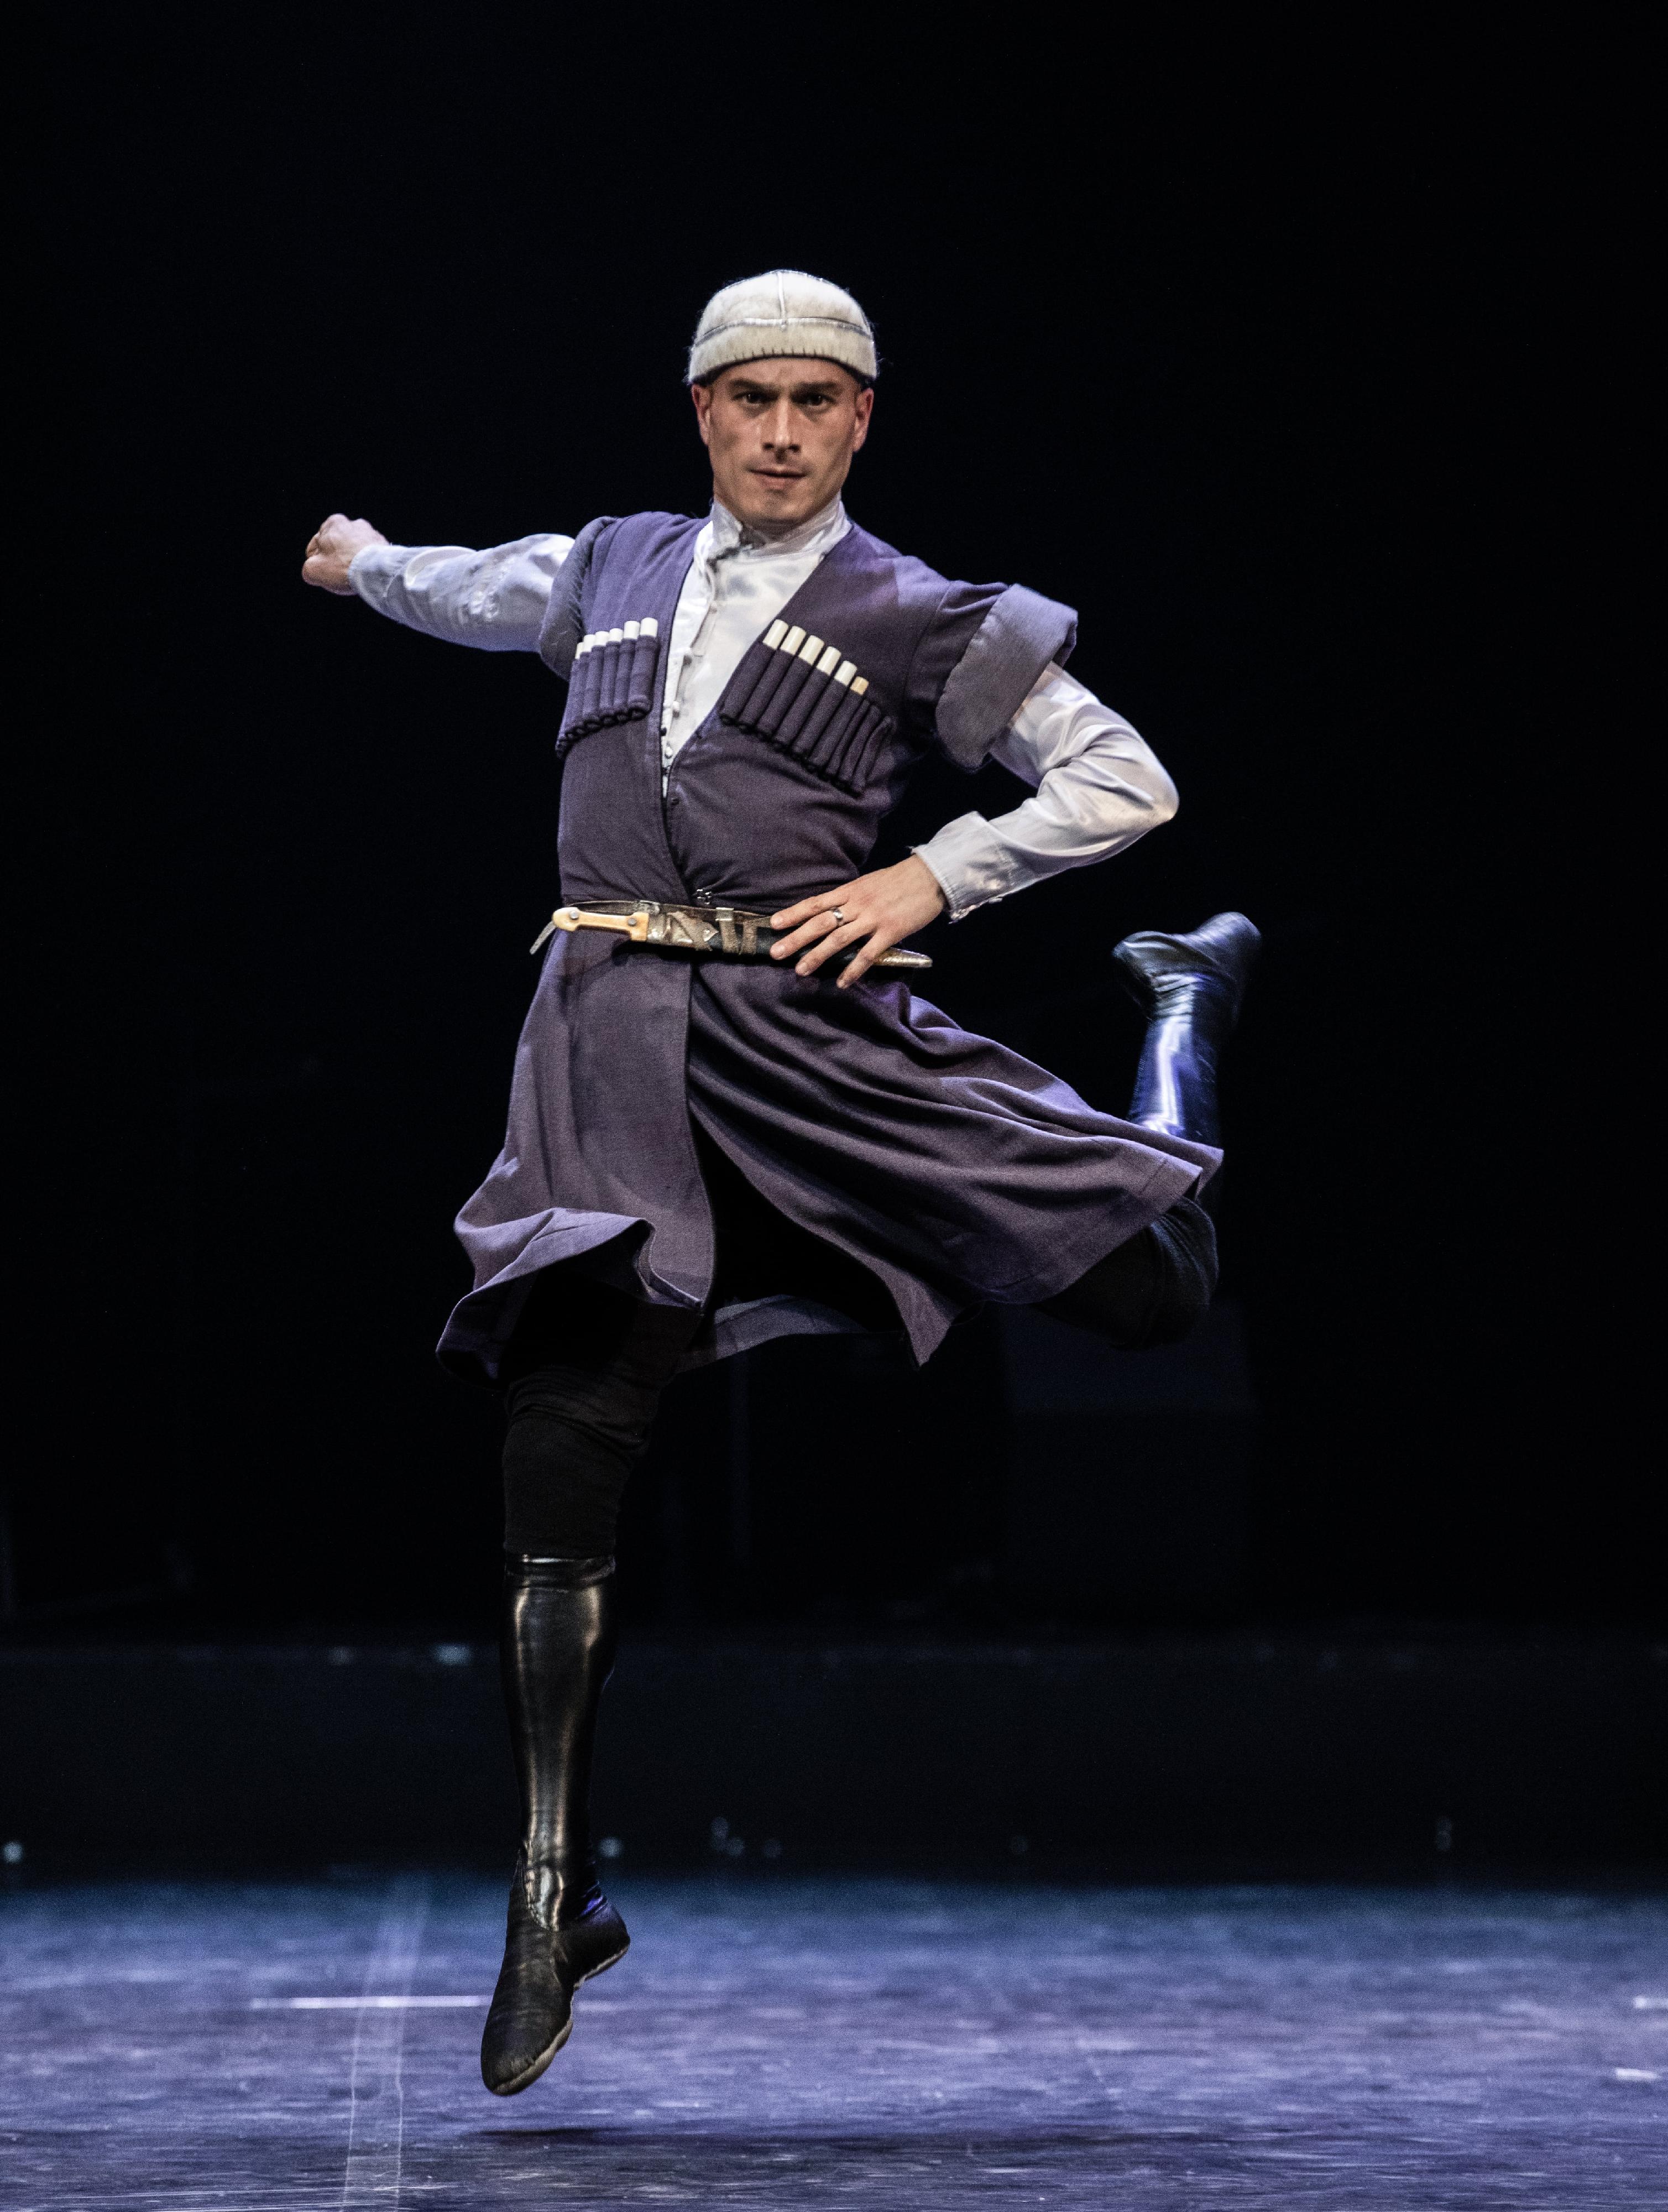 康乐及文化事务署邀得格鲁吉亚国家舞蹈团于五月三十一日及六月一日在沙田大会堂演出。图示格鲁吉亚国家舞蹈团过往演出剧照。